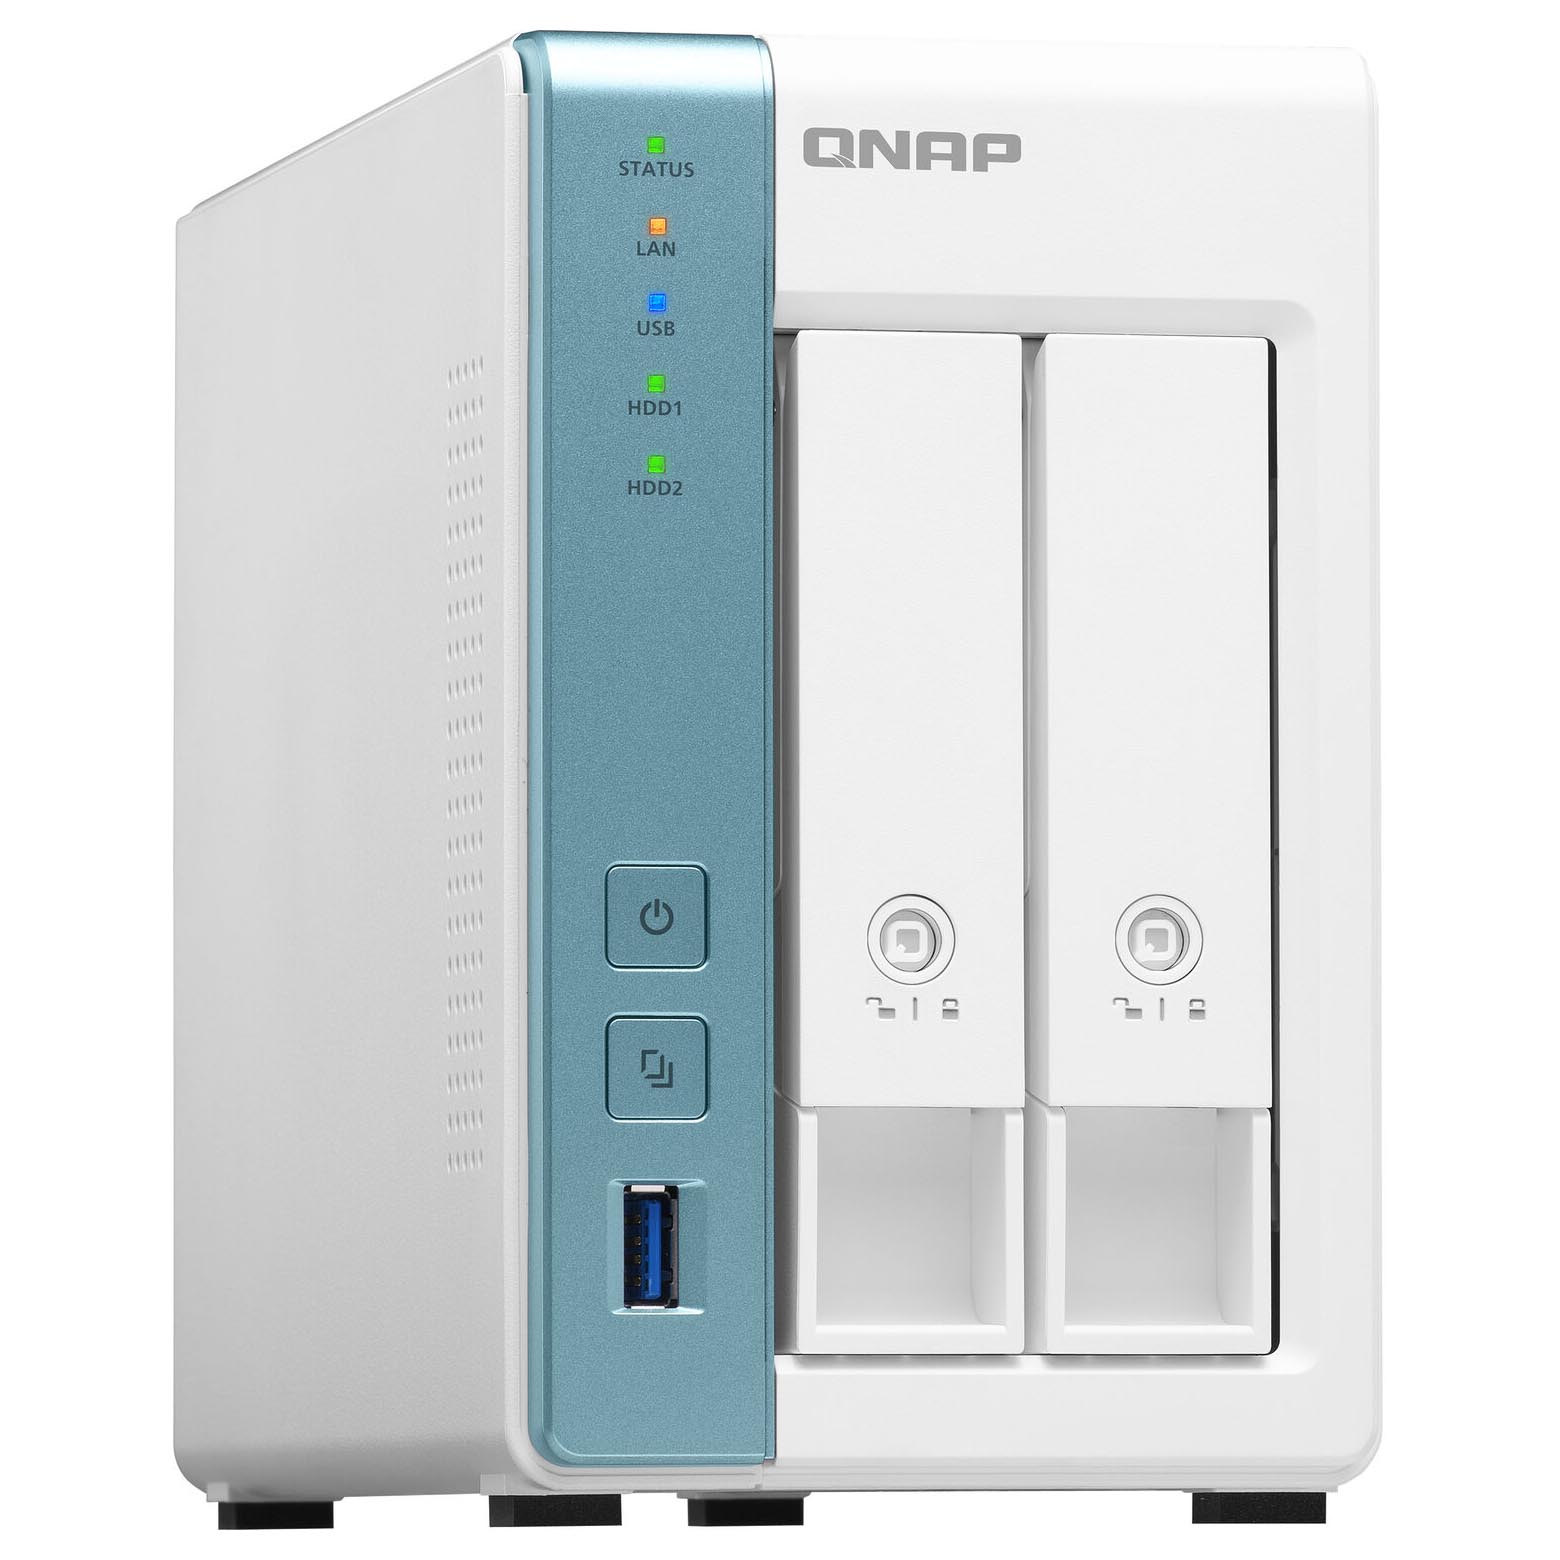 Сетевое хранилище QNAP TS-231P3, 2 отсека, 4Гб DDR3, без дисков, белый корпус для жесткого диска gigabit ethernet nas умный чехол для жесткого диска 2 5 дюйма 3 5 дюйма интерфейс gigabit ethernet диск дистанционного доступа nas